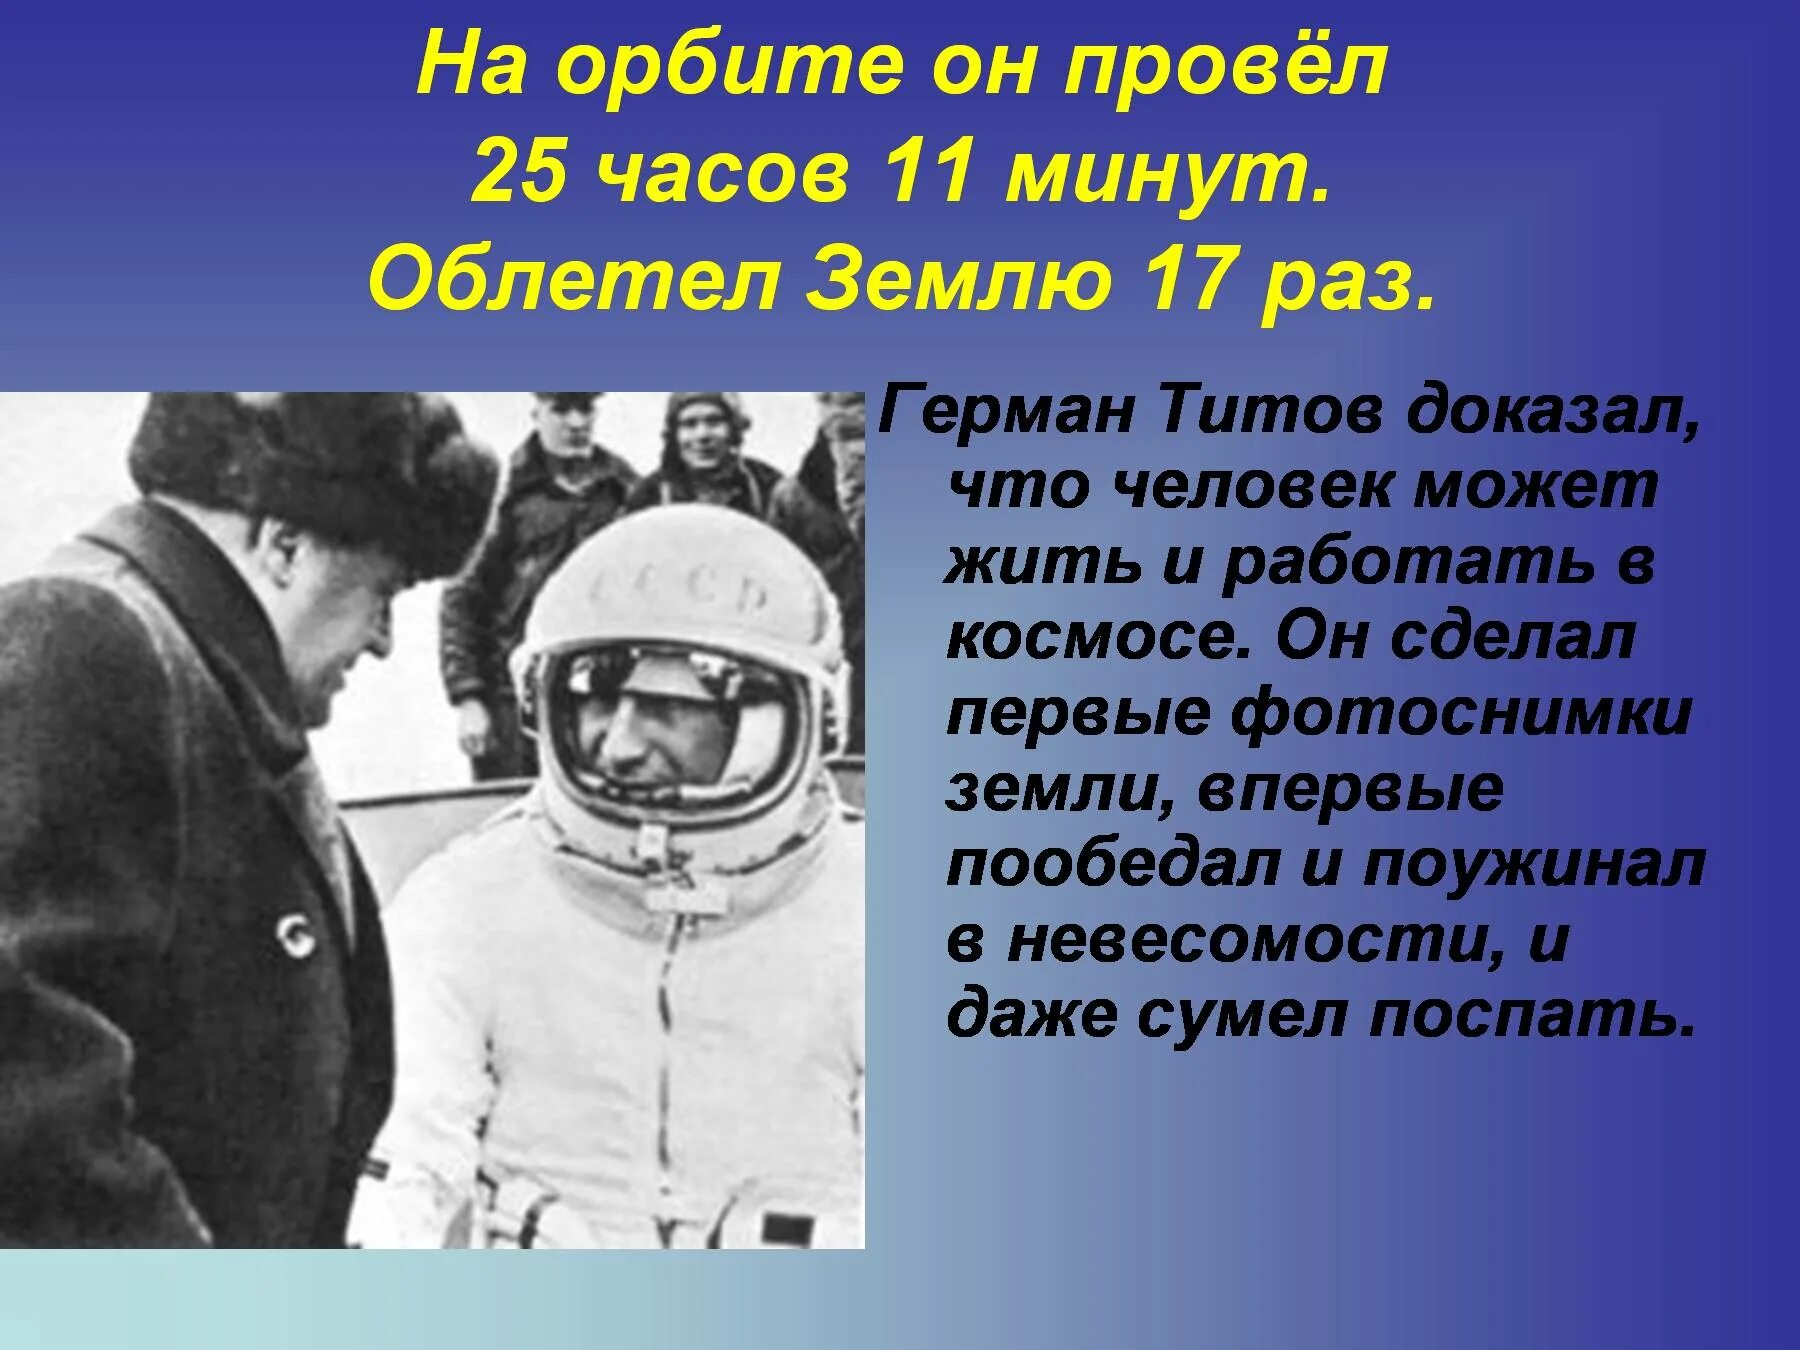 Титов космонавт презентация. Сколько раз облетел земной